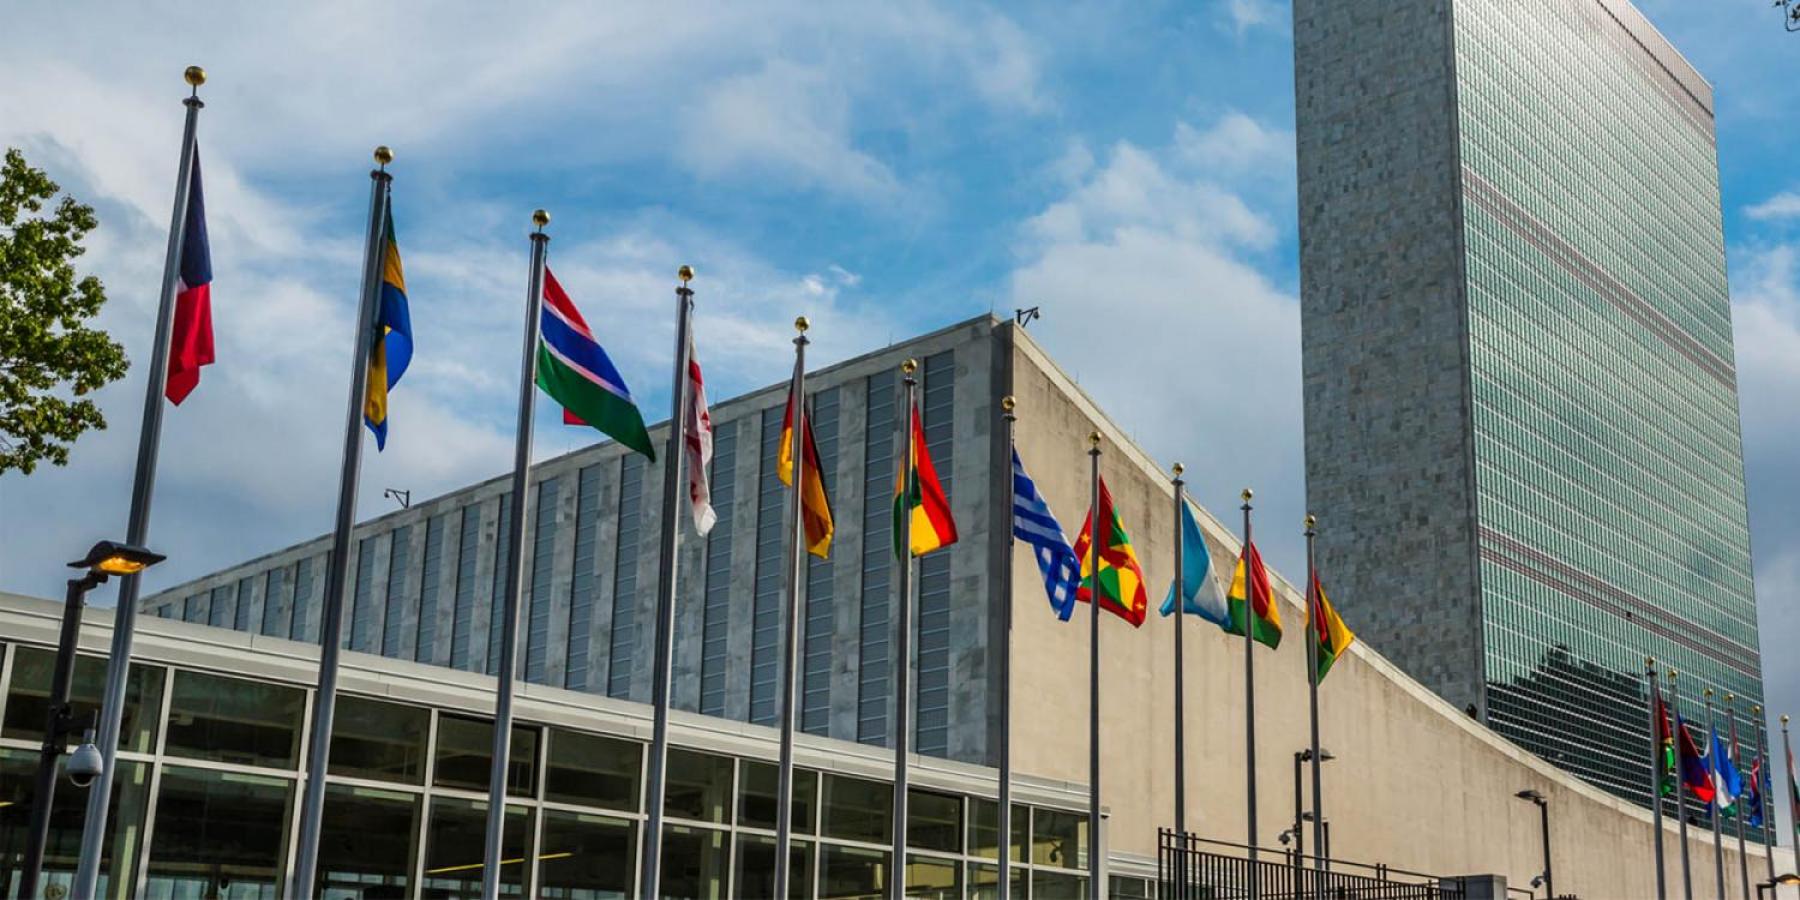 UN HQ in New York